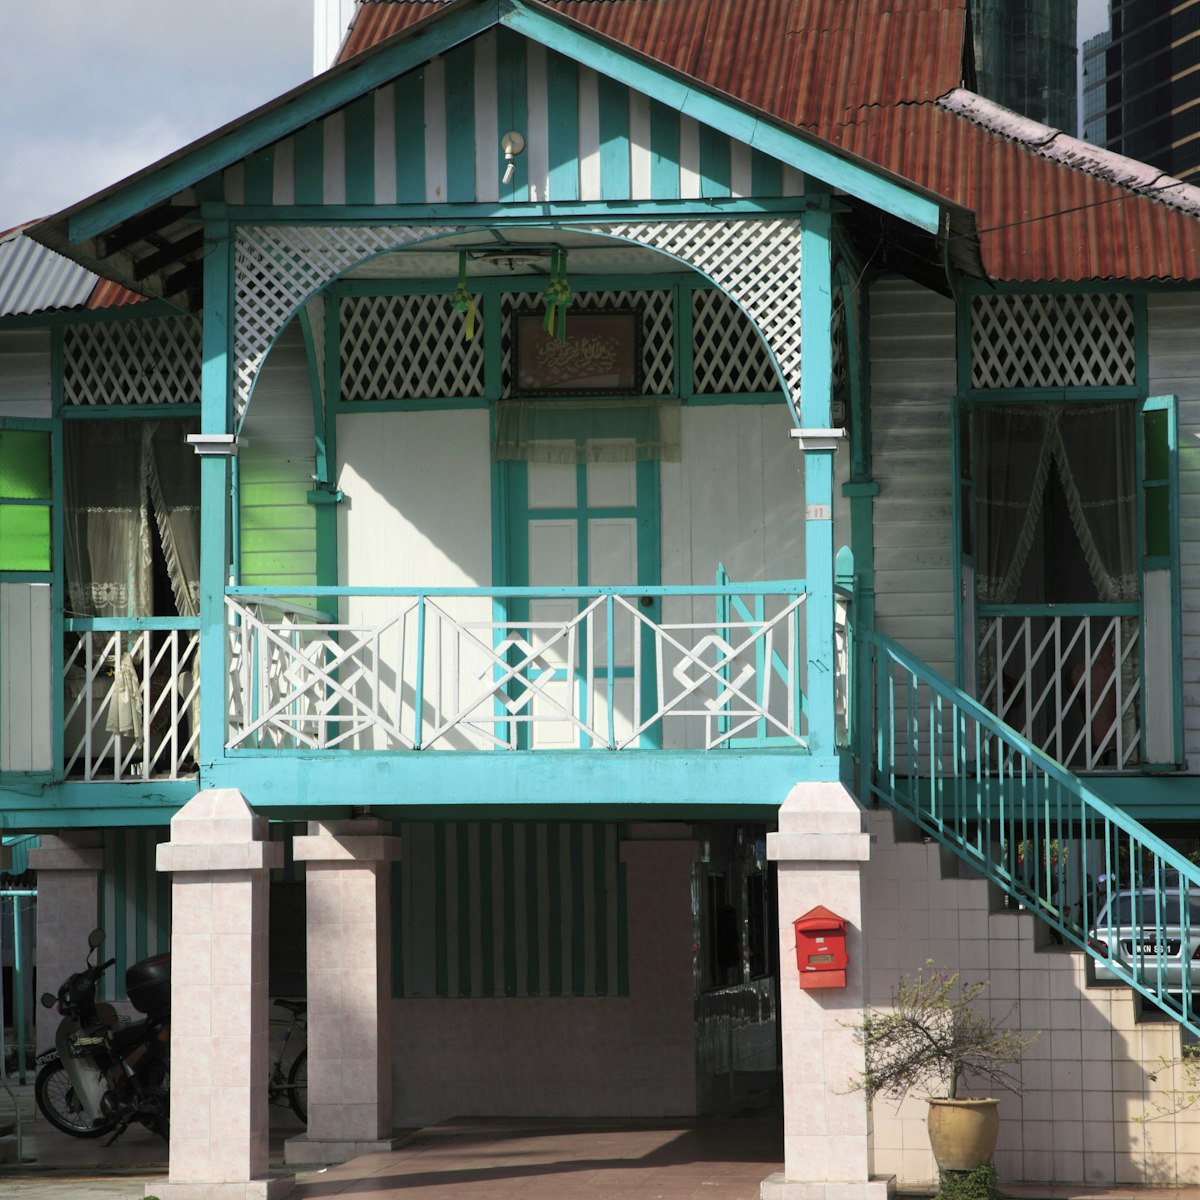 Malaysia, Kuala Lumpur, Kampung Baru, traditional malay house,